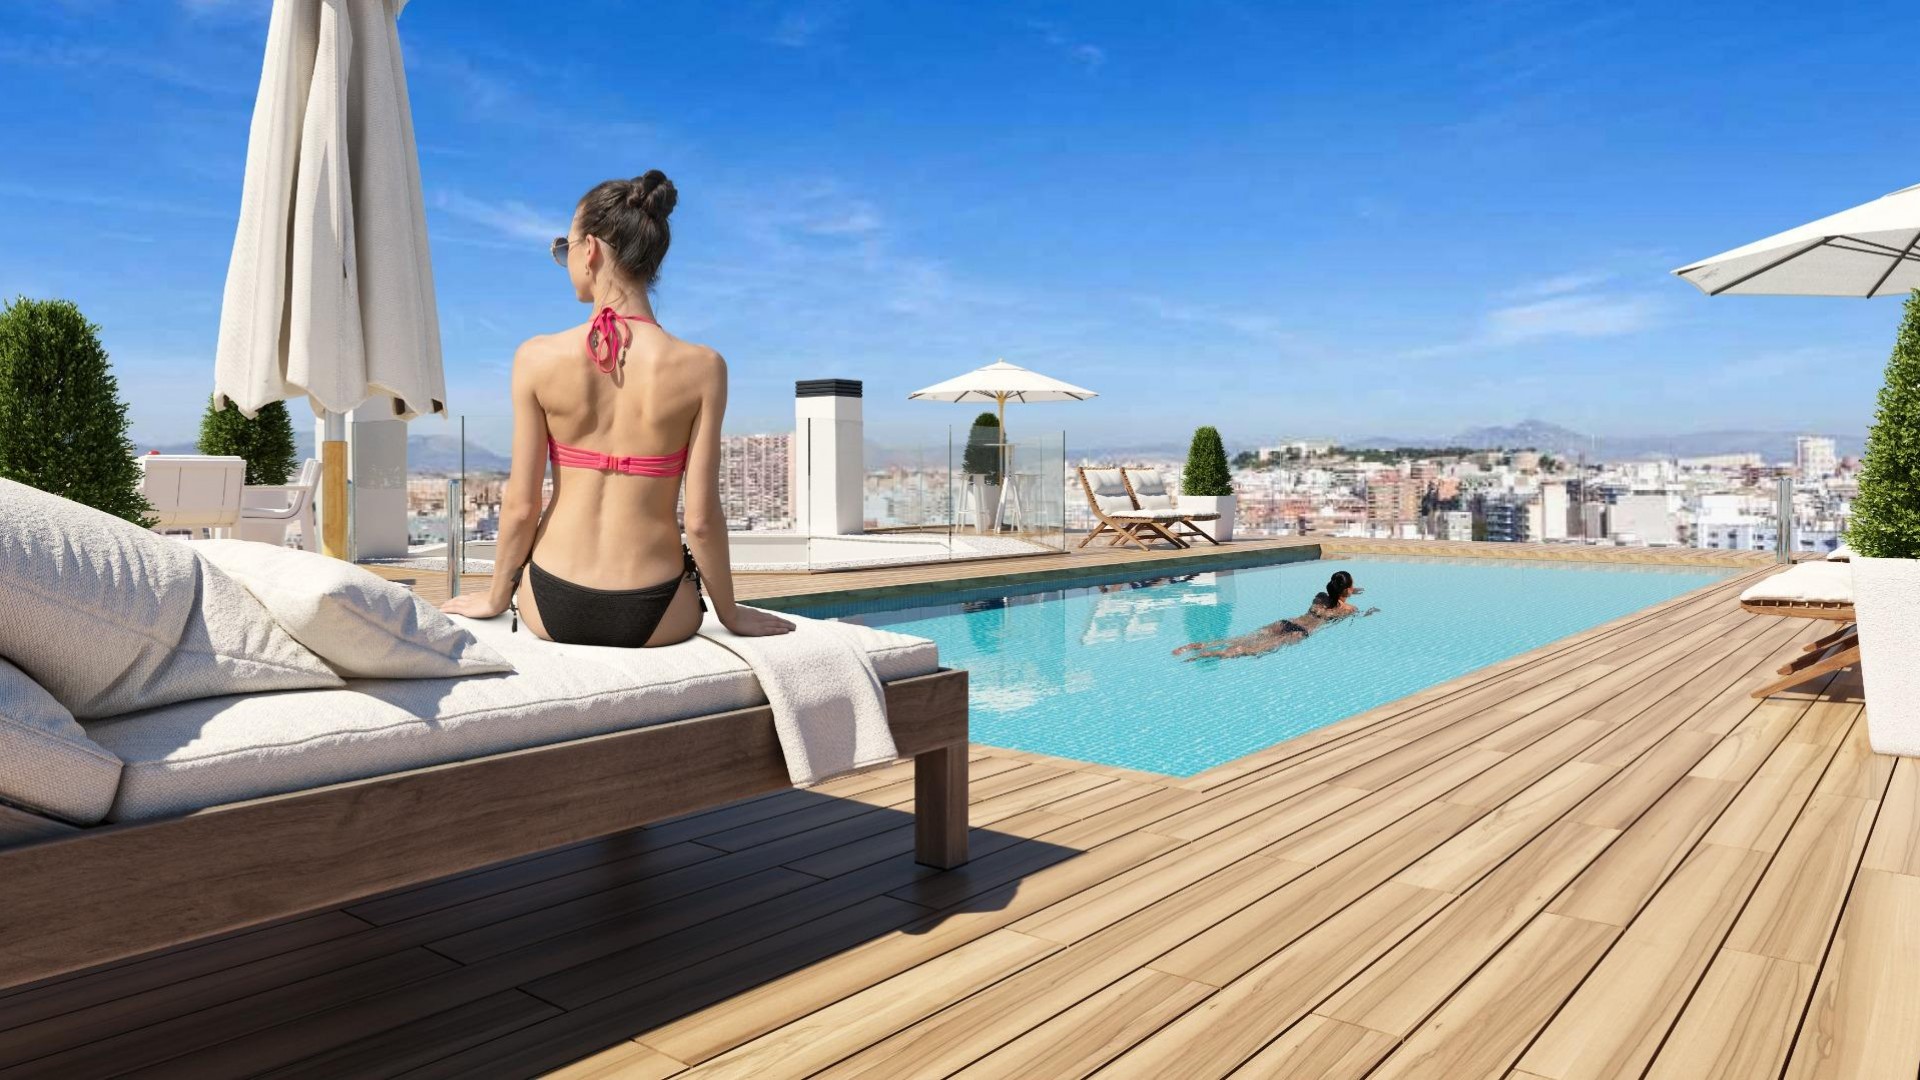 Alicante by, leiligheter og toppleiligheter, 2/3/4 soverom i La Florida, takterrasse med svømmebasseng, felles hage med lekeplass og grønne områder.